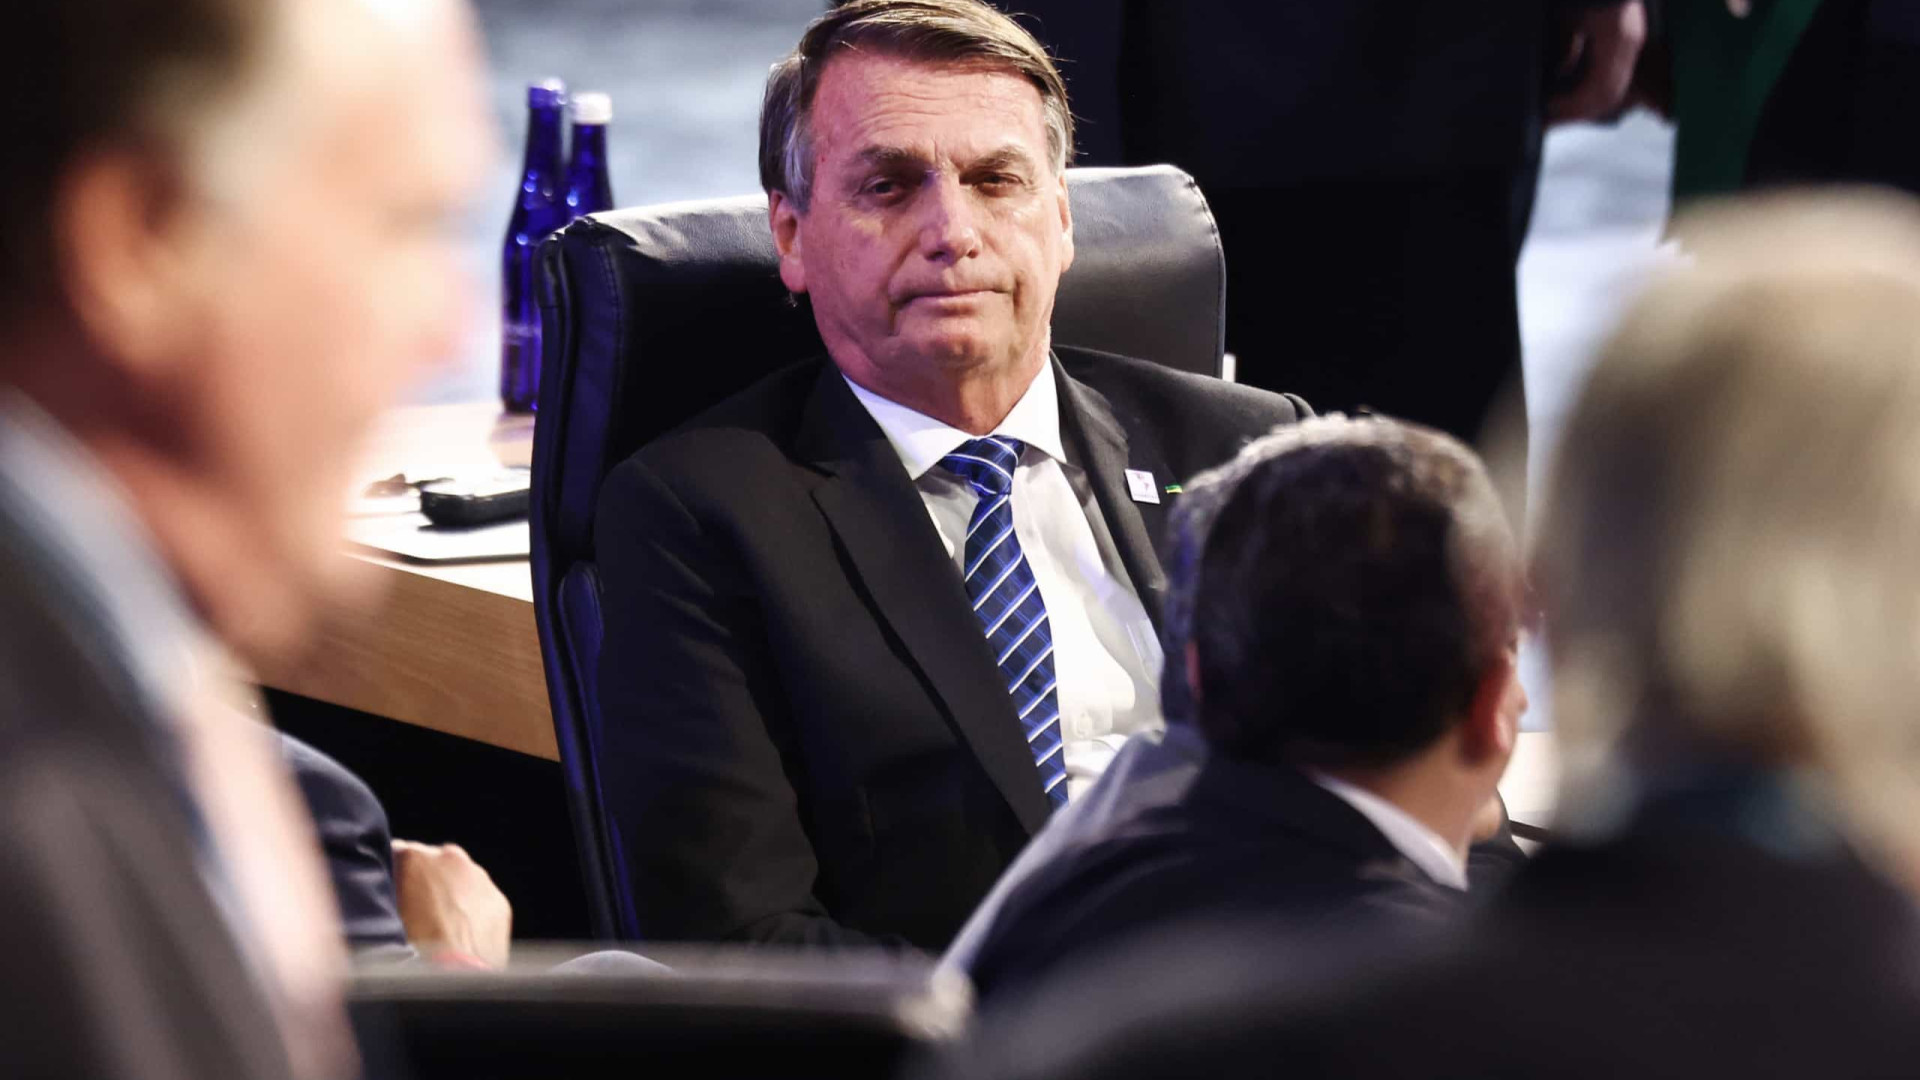 Advogado comenta fala de Bolsonaro contra 'macumbeiros': "tiro no pé"